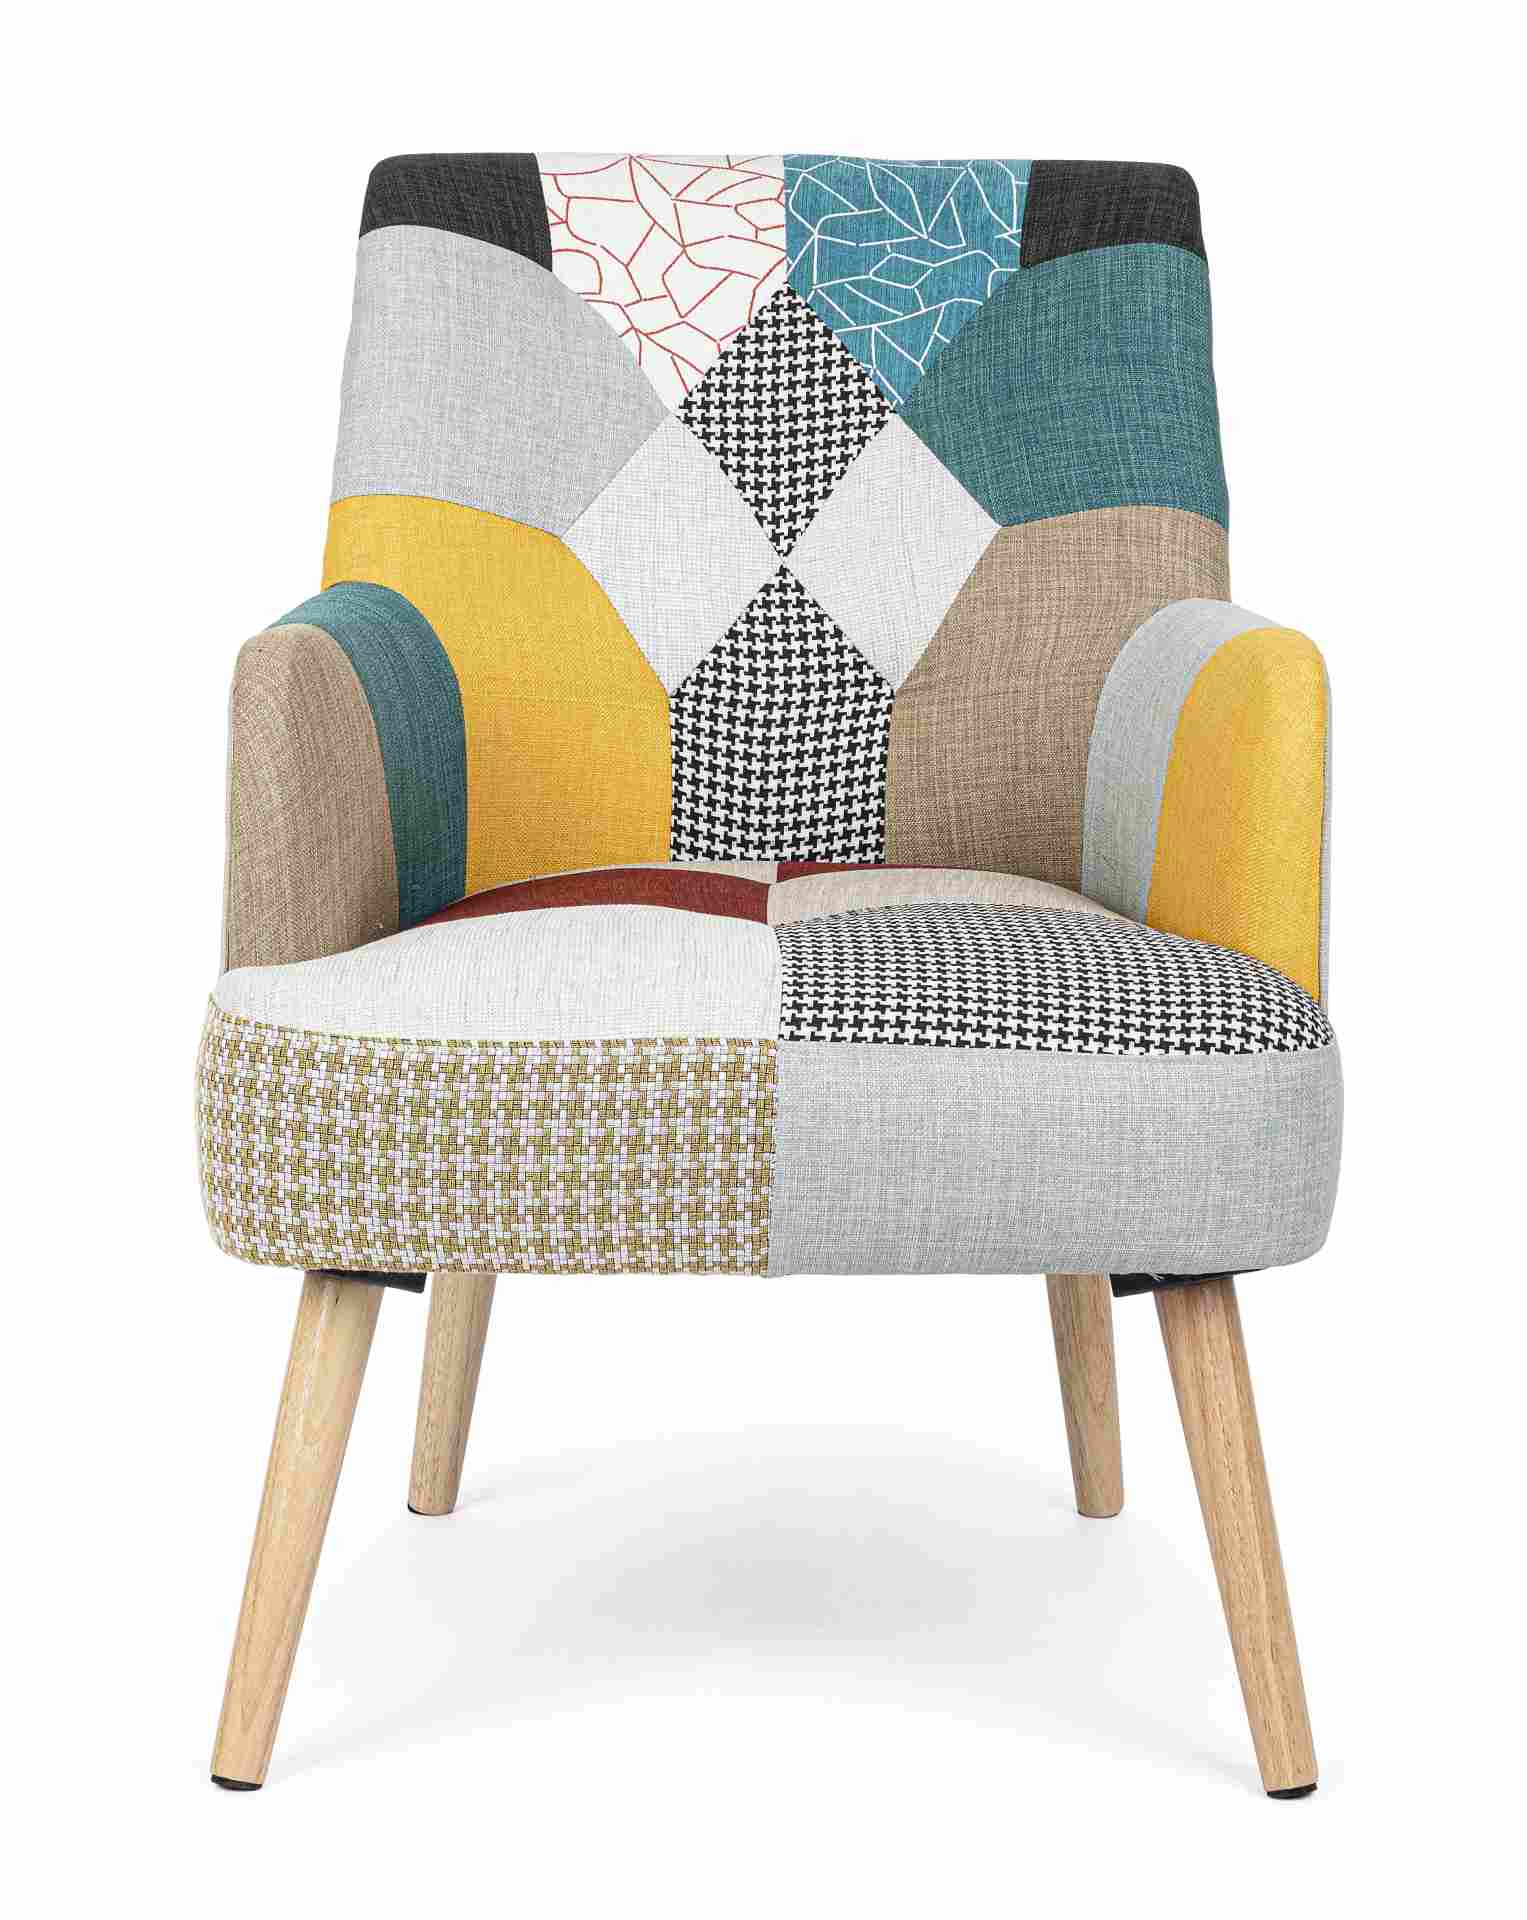 Der Sessel Galatea überzeugt mit seinem klassischen Design. Gefertigt wurde er aus Stoff, welcher einen mehrfarbigen Farbton besitzt. Das Gestell ist aus Kautschukholz und hat eine natürliche Farbe. Der Sessel besitzt eine Sitzhöhe von 43 cm. Die Breite b